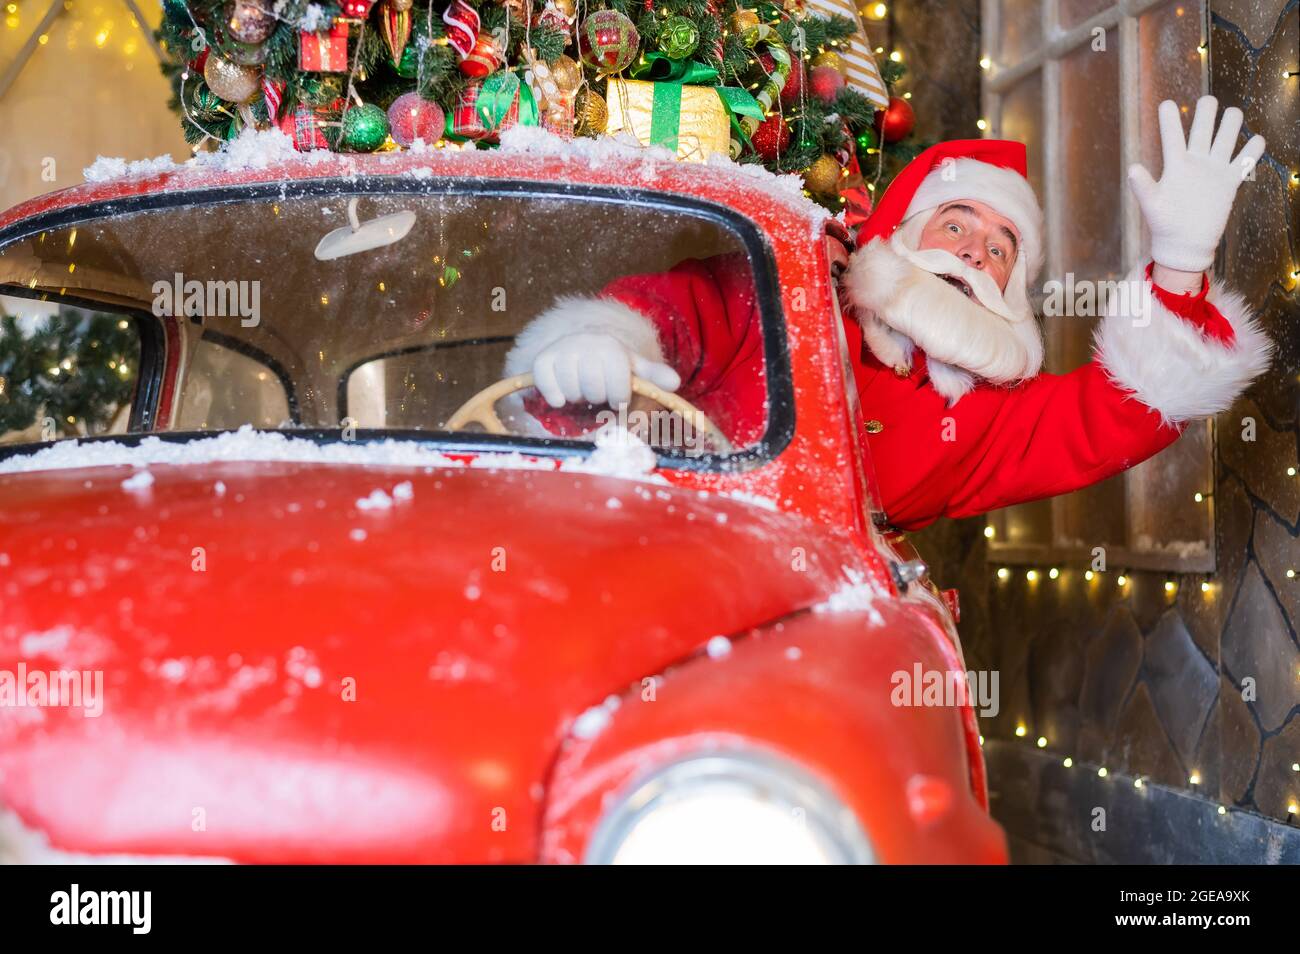 weihnachtsmann grüßt während der Fahrt mit einem roten Retro-Auto. Frohe  Weihnachten Stockfotografie - Alamy